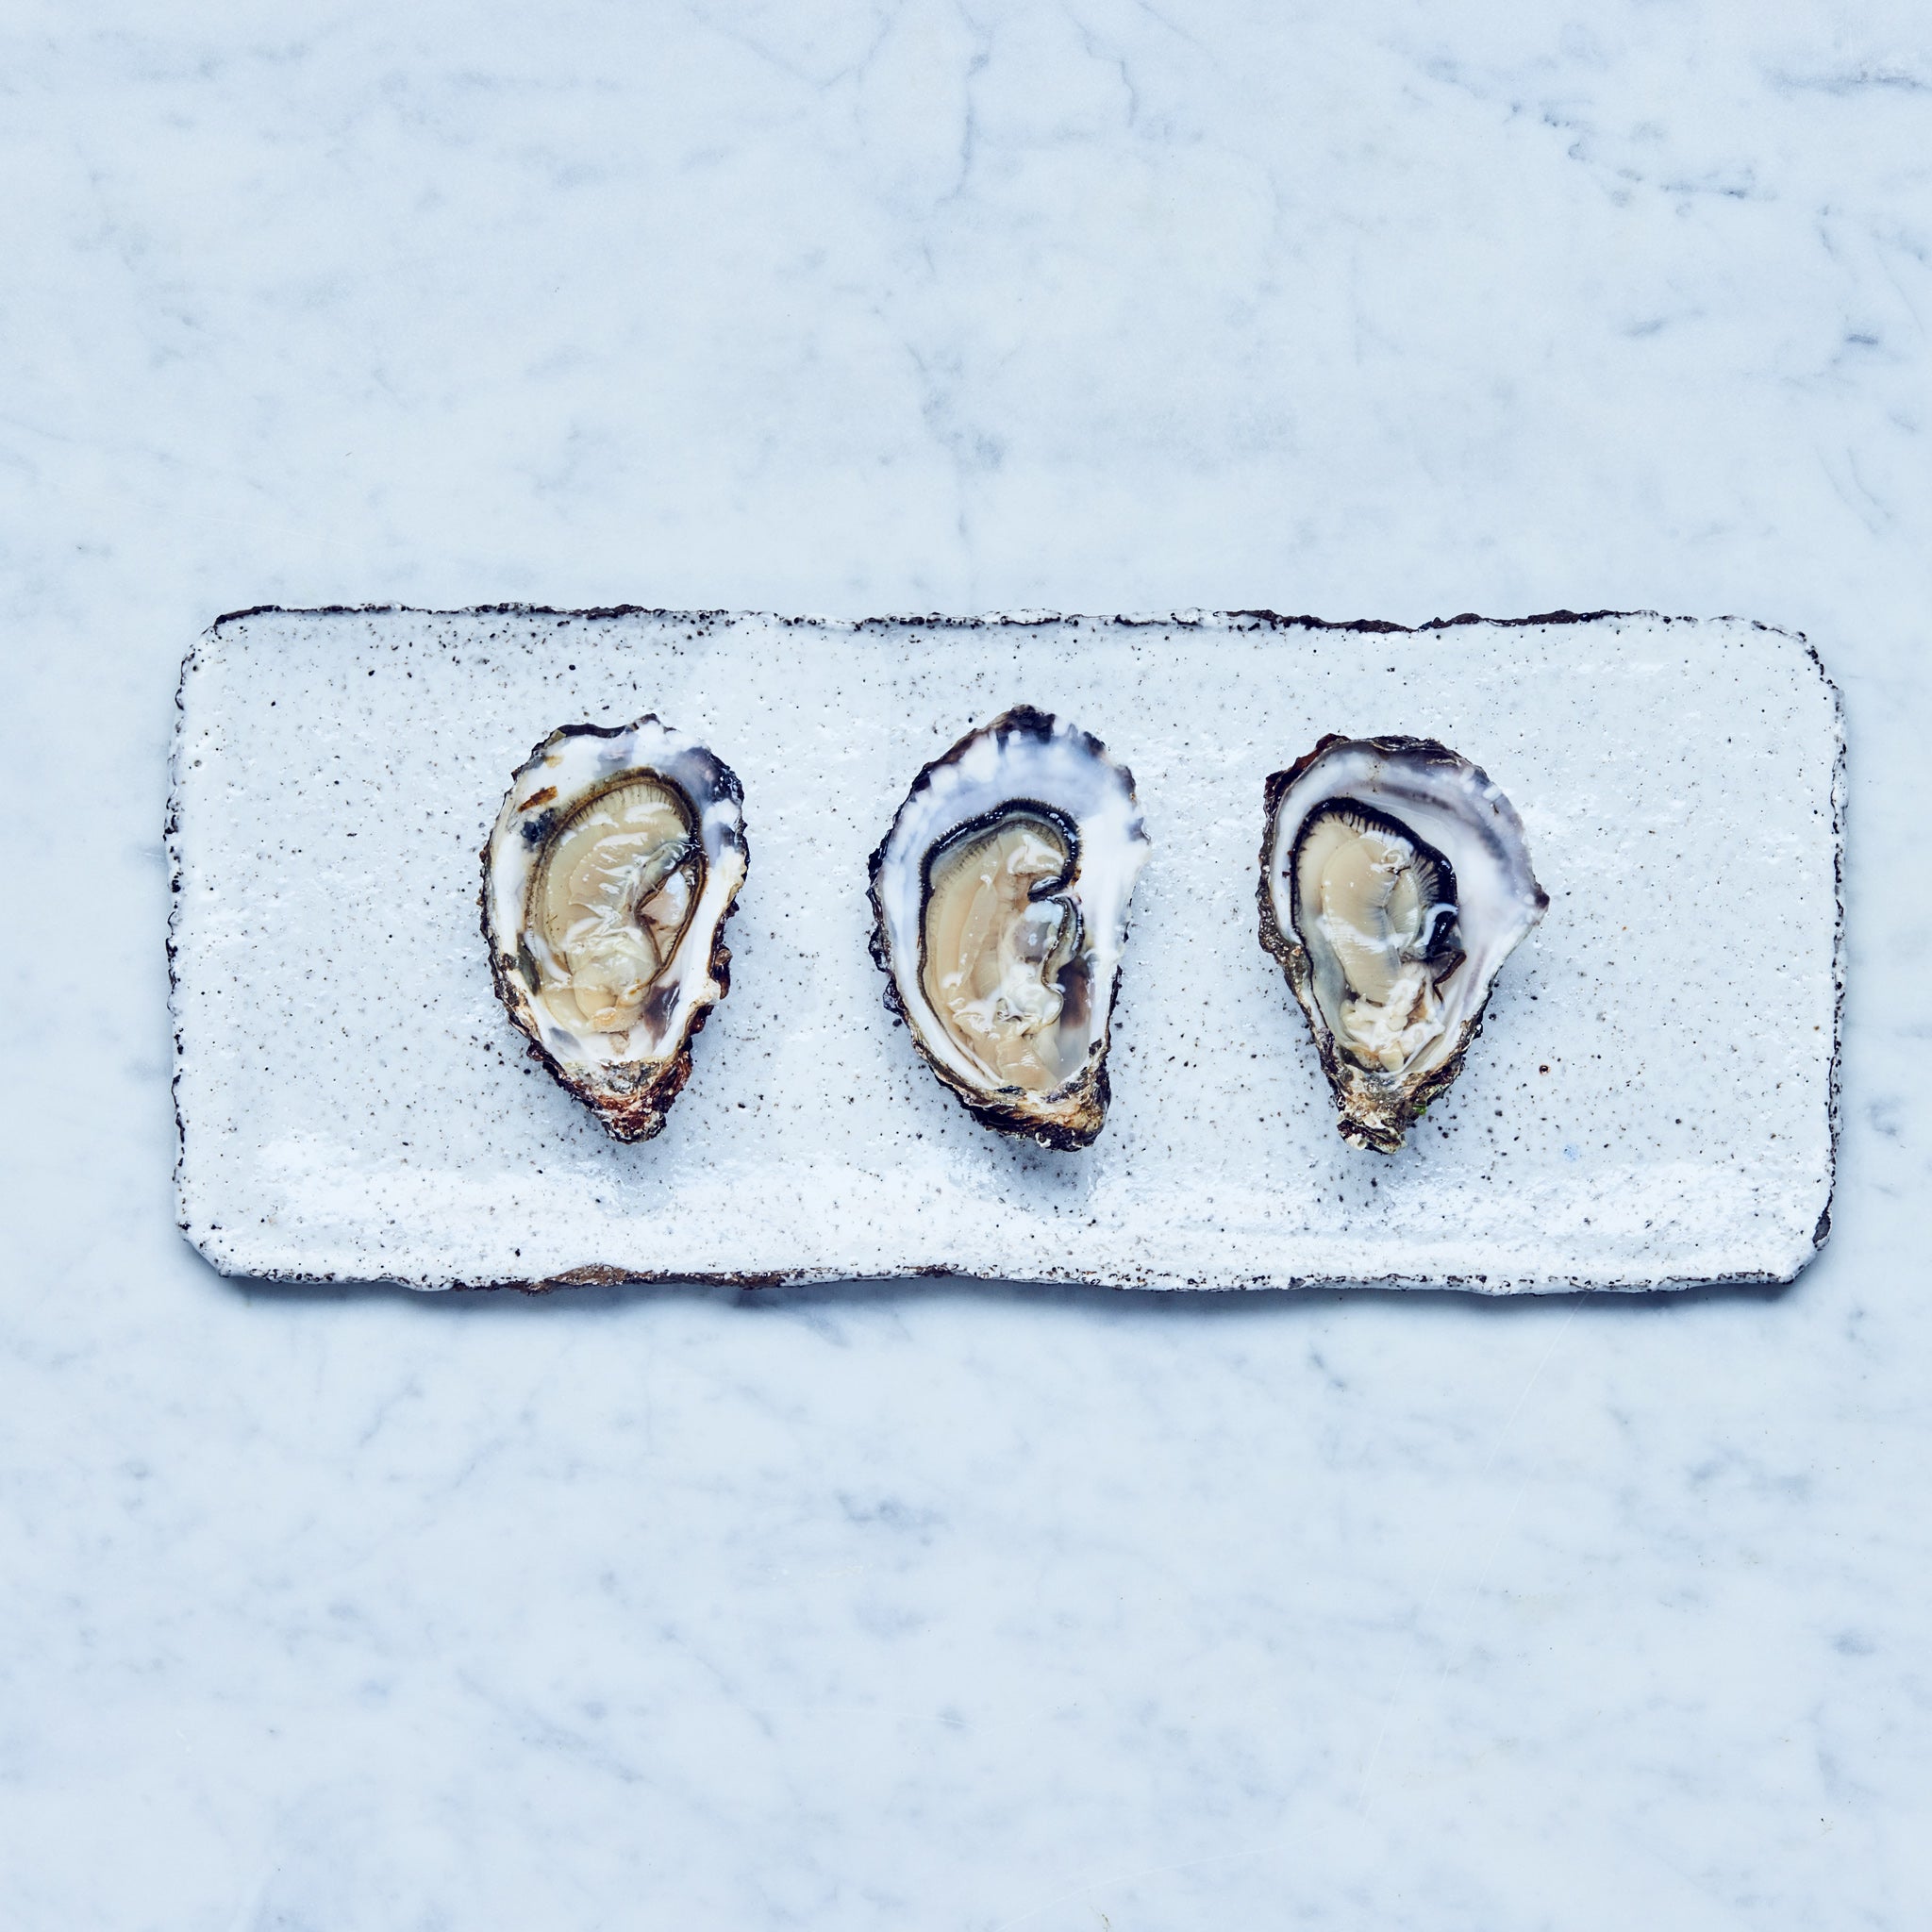 Drei frische Sylter Royal Austern auf einem weißen, rechteckigen Teller.